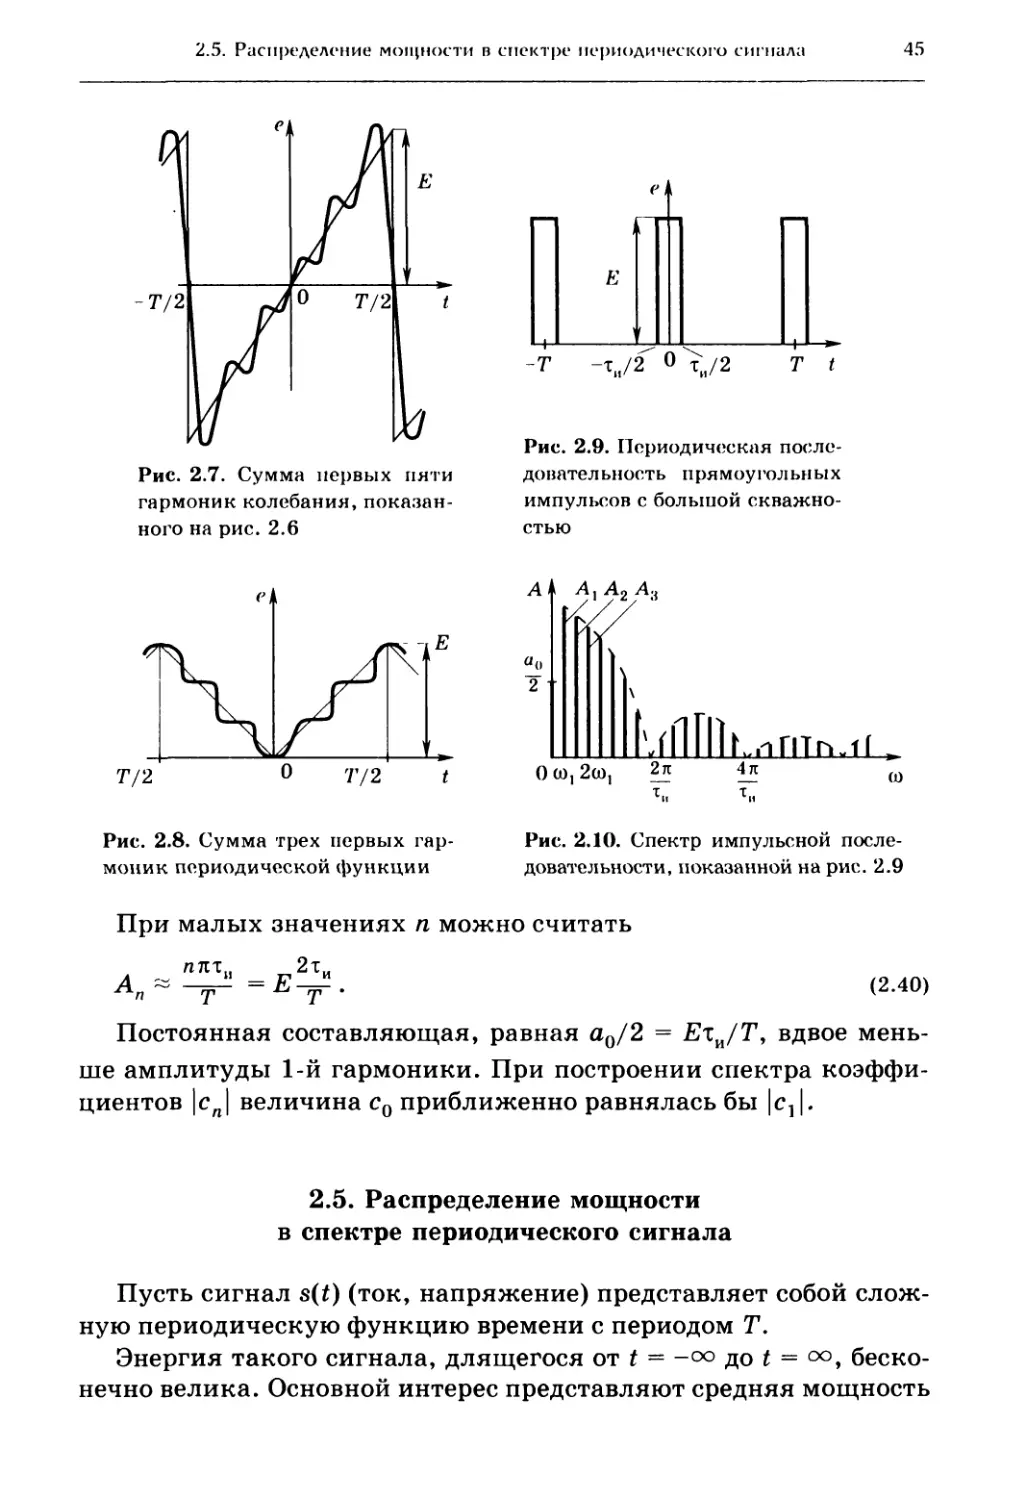 2.5. Распределение мощности в спектре периодического сигнала